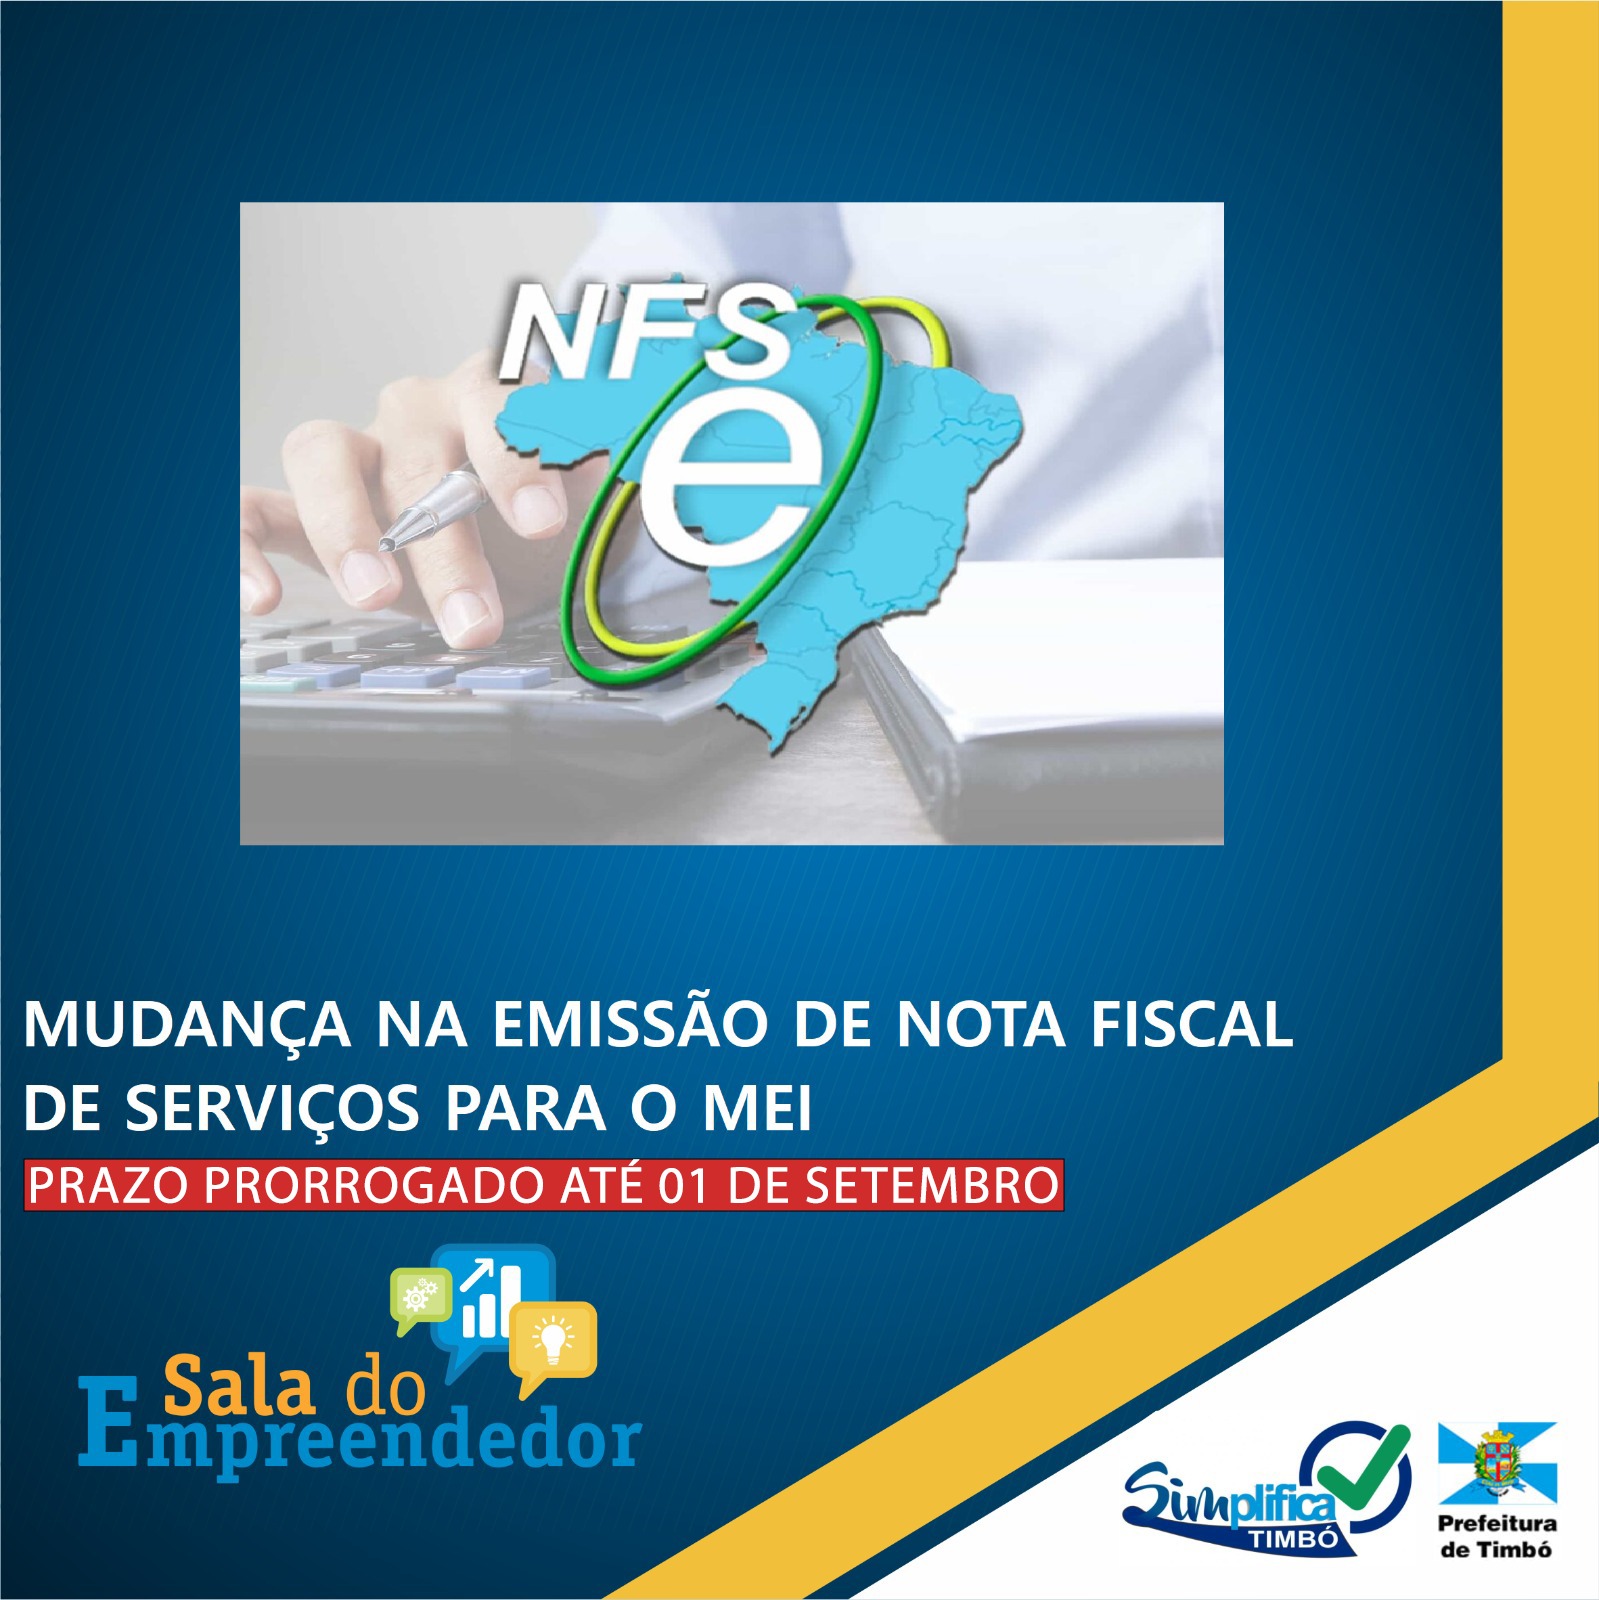 MEI: A partir de 01/09/2023, emissão de NFSe via Portal do Governo Federal